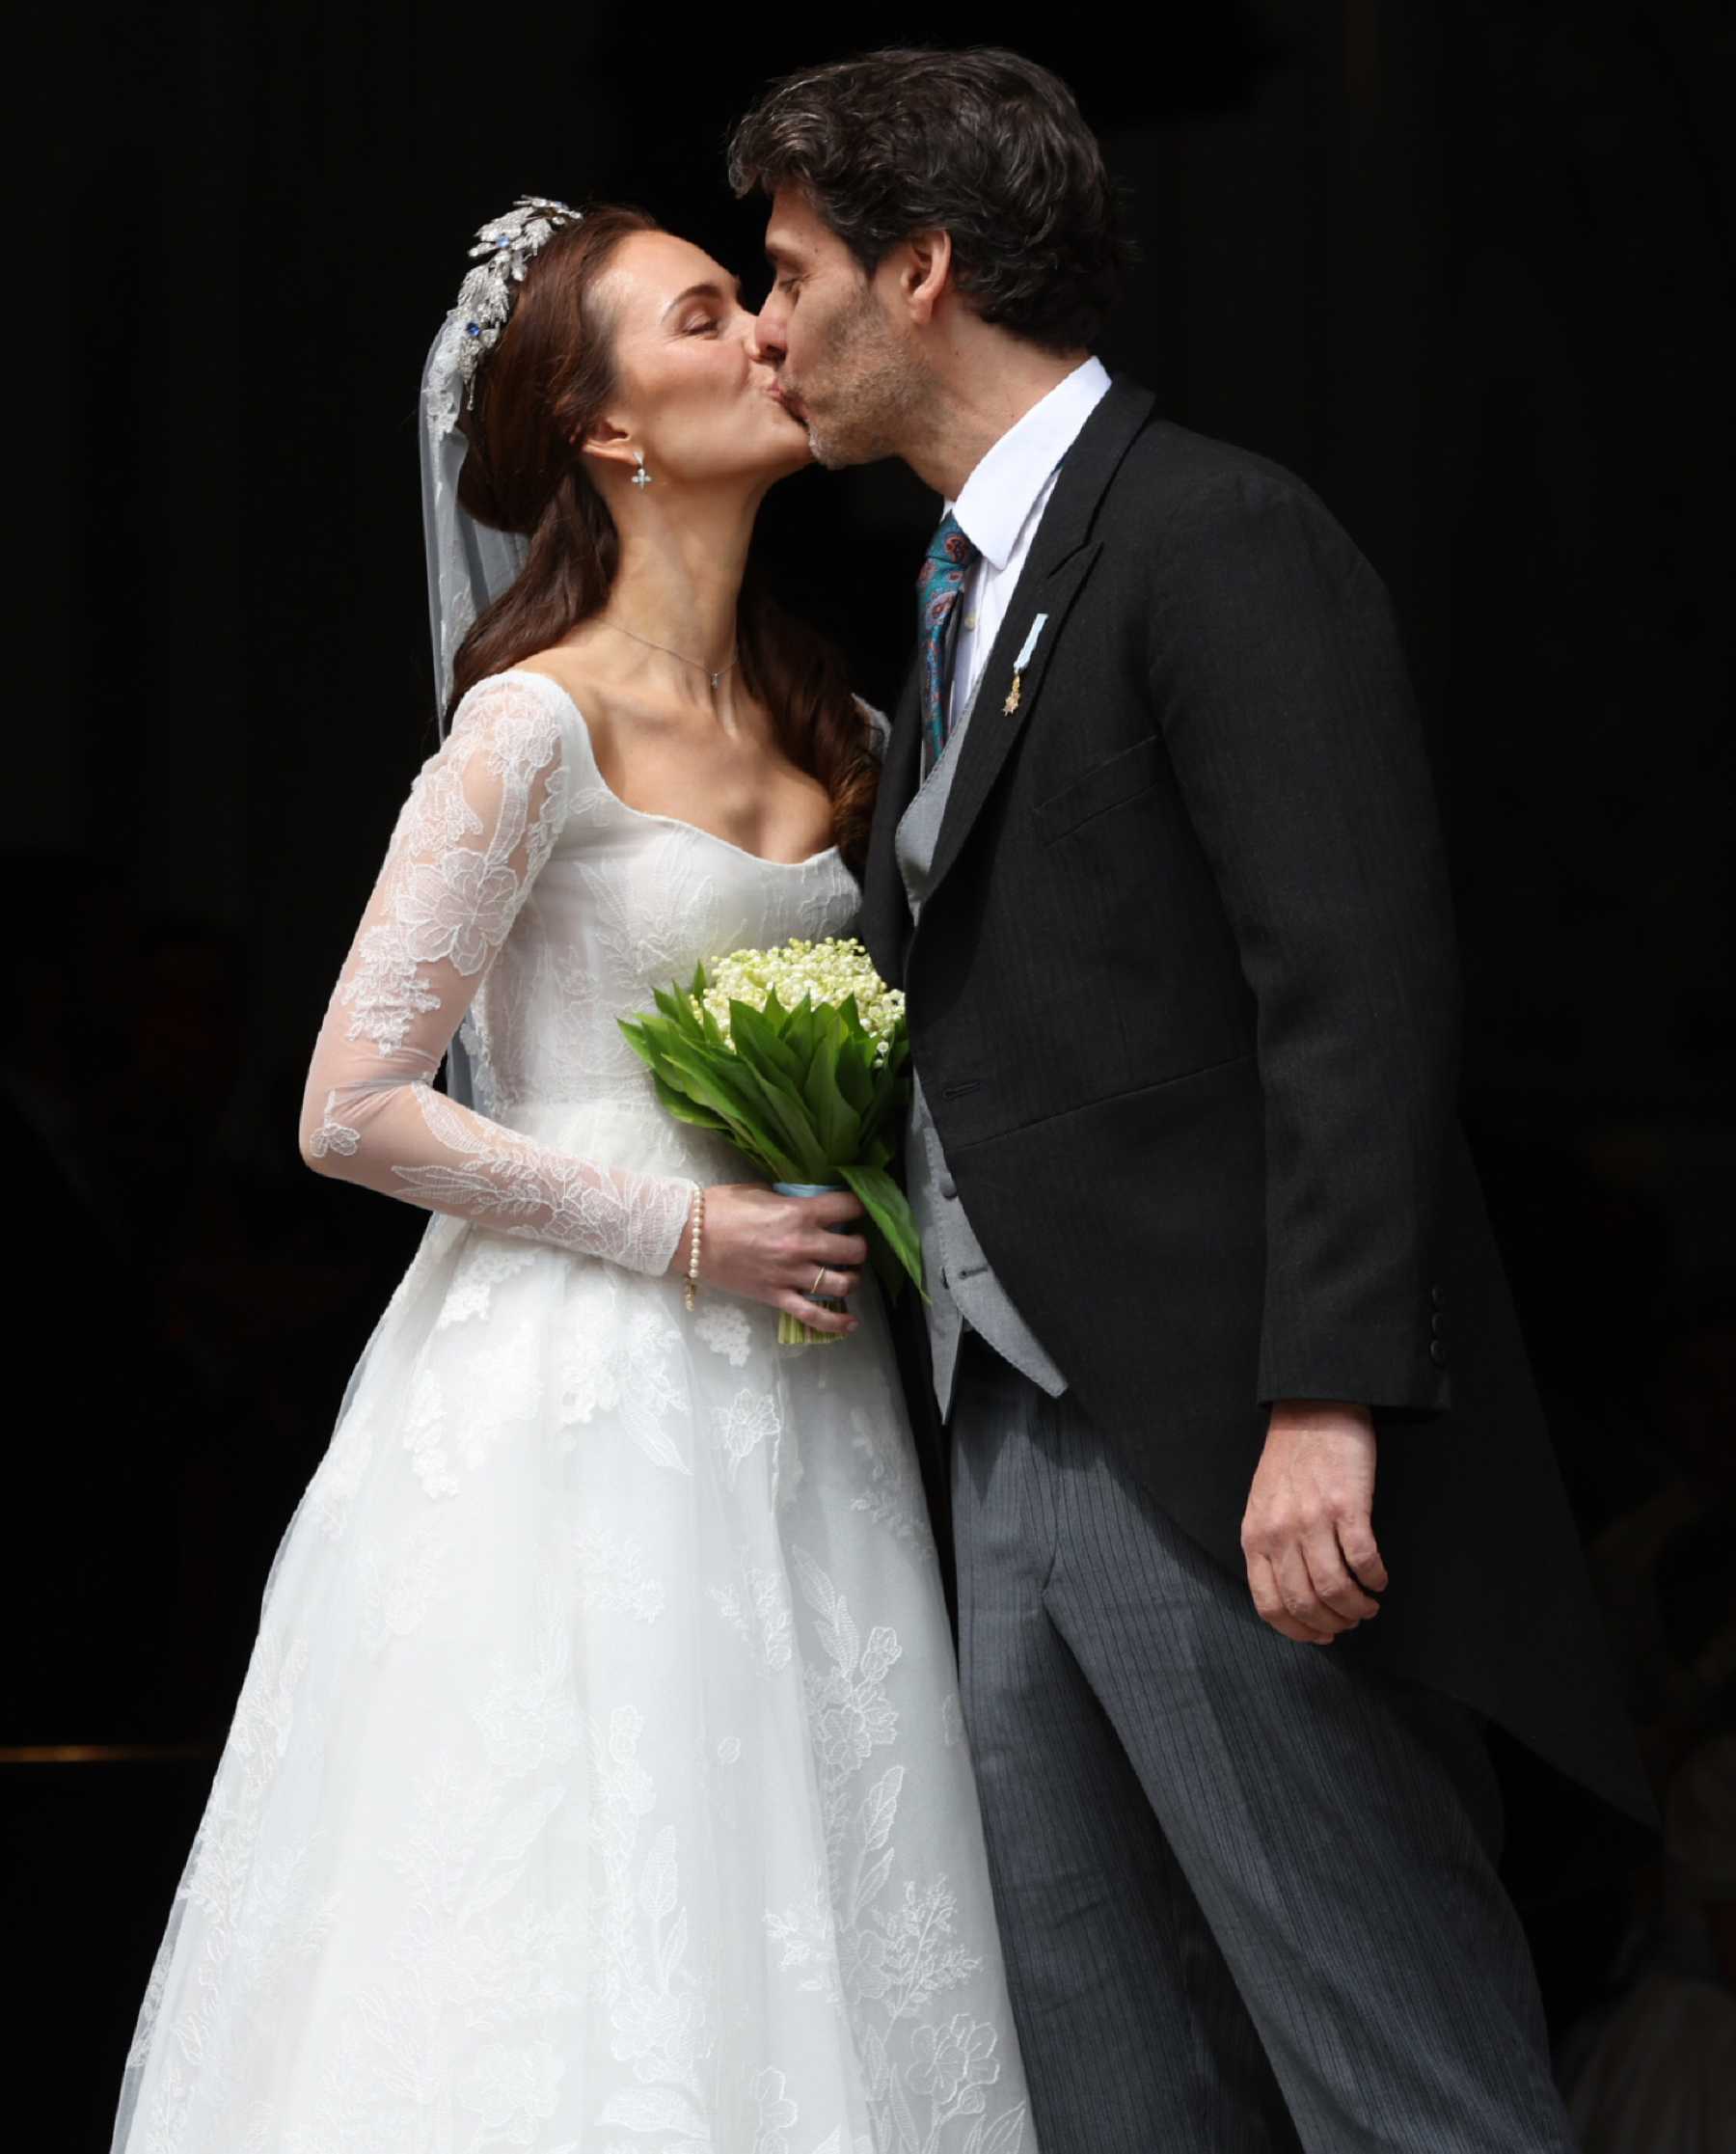 Sophie Evekink y Luis de Baviera en el día de su matrimonio / Gtres